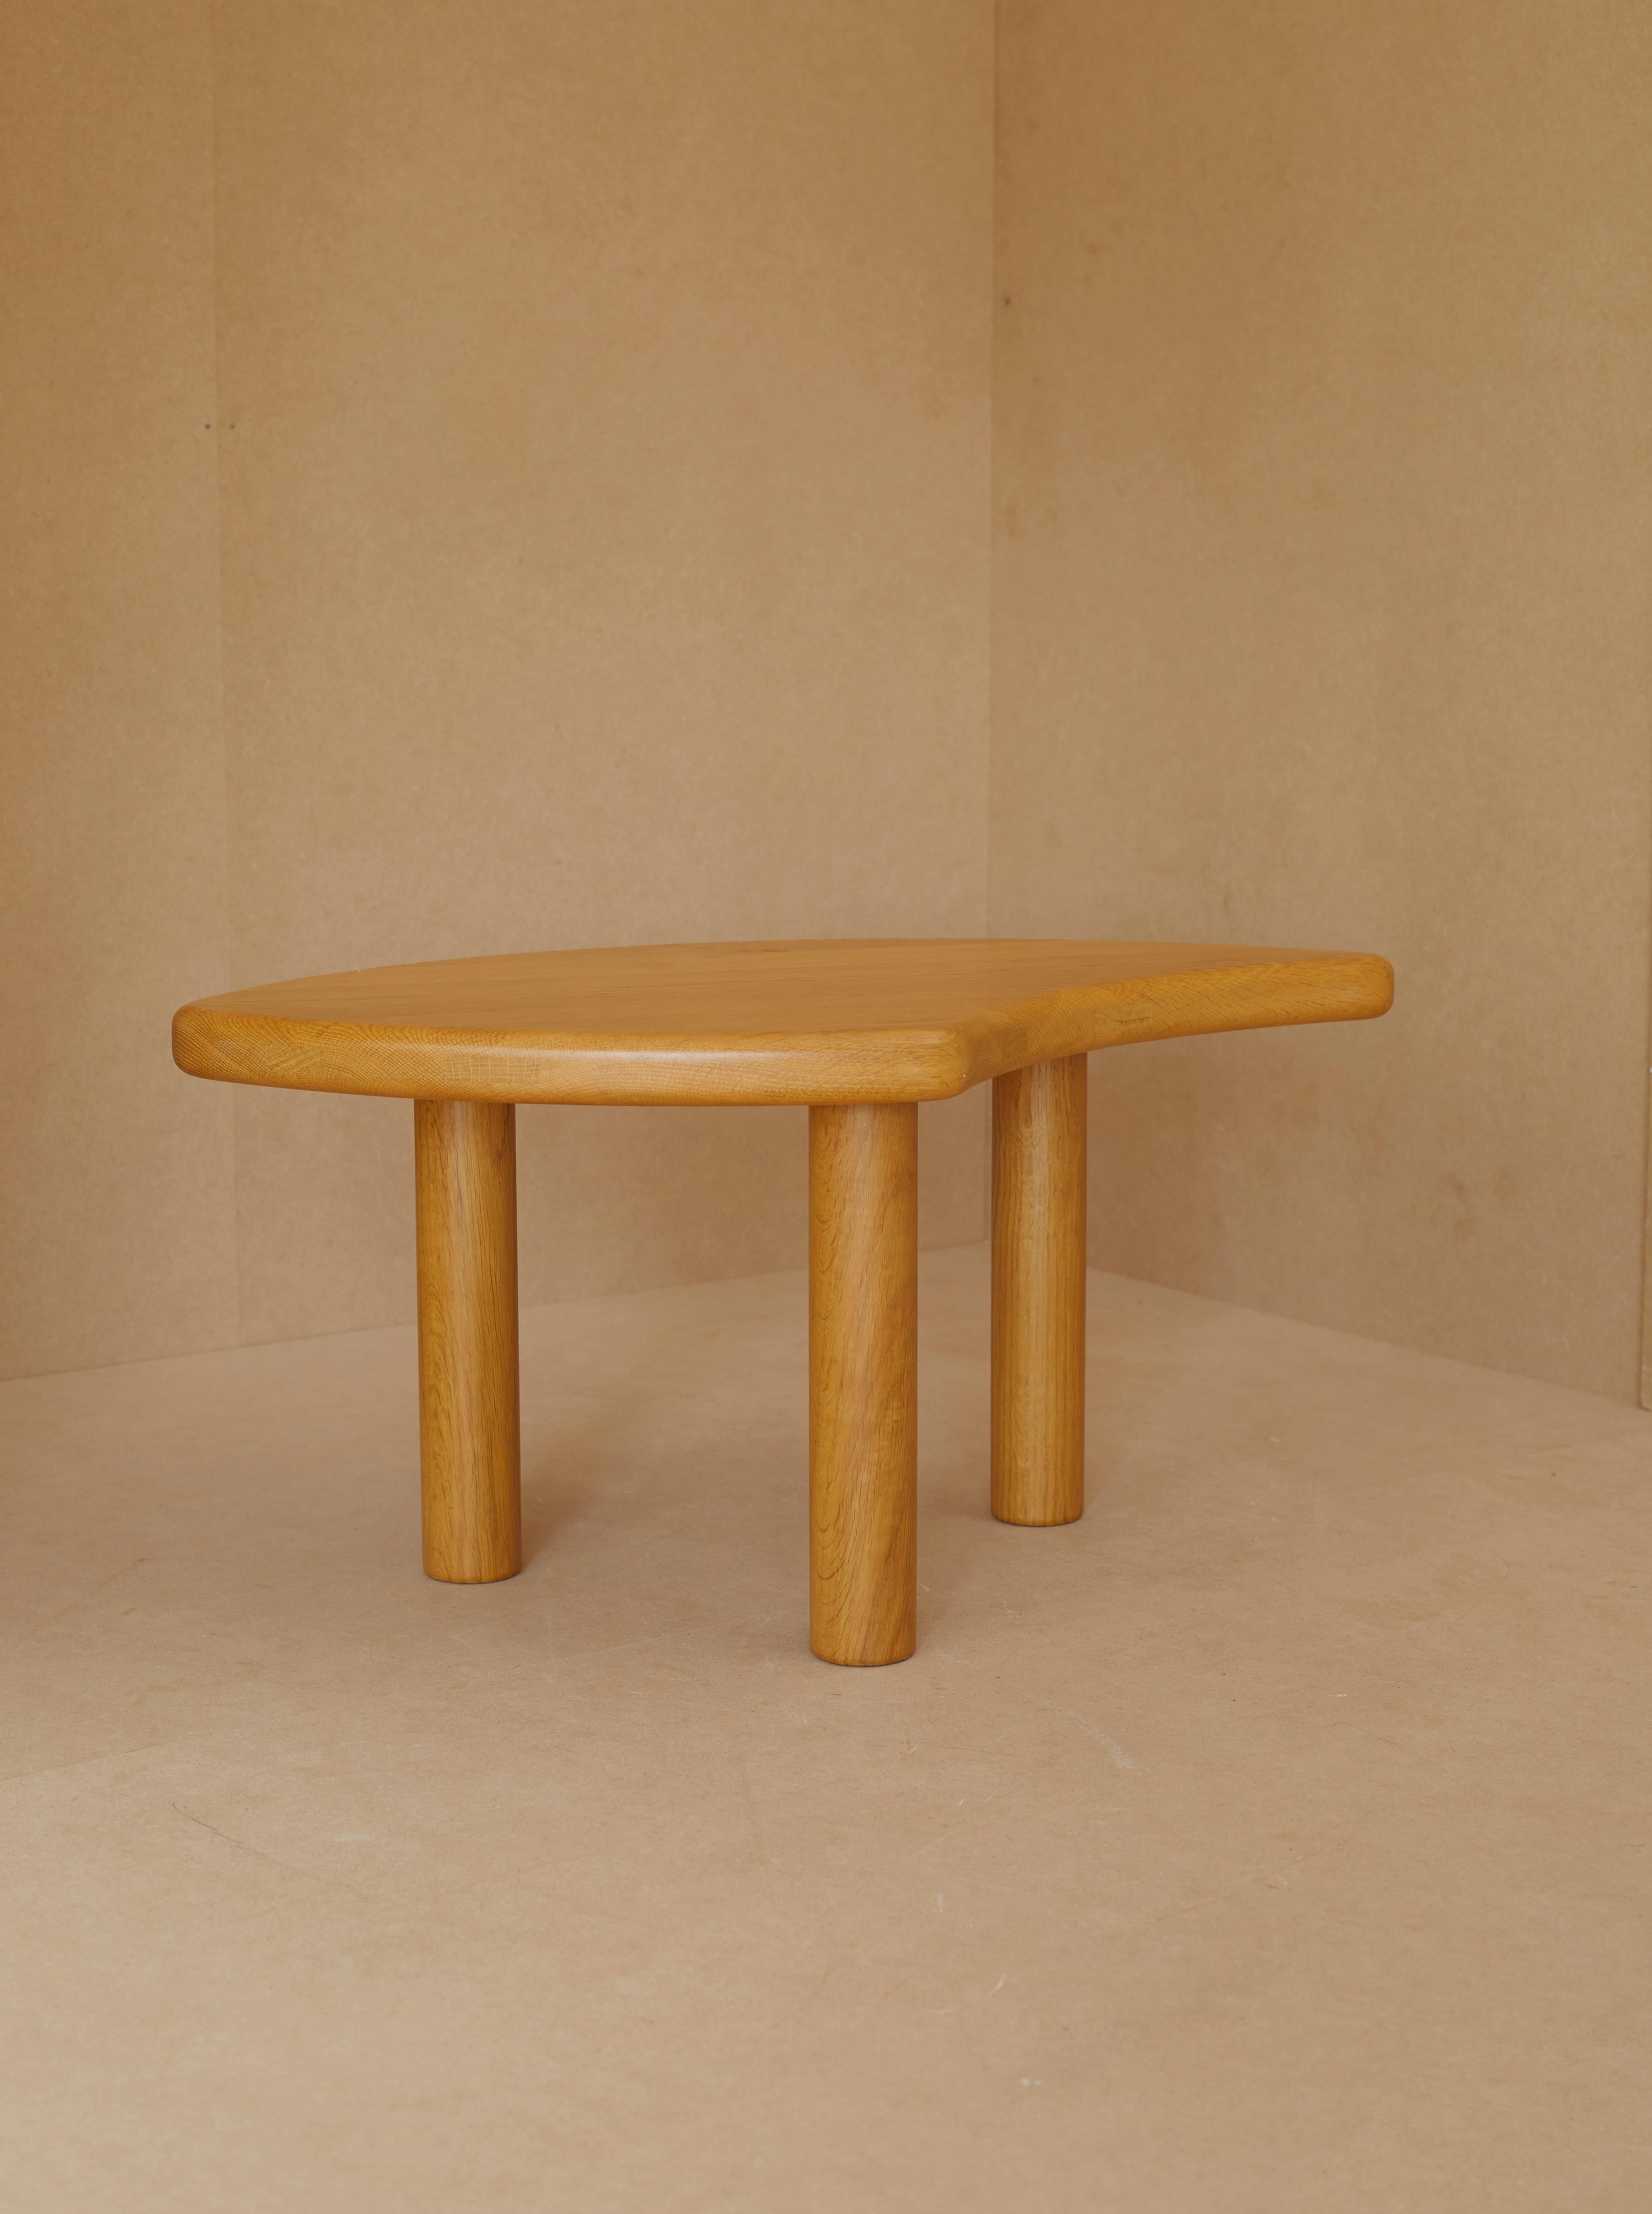 Fin du 20e siècle Tables basses modulables en chêne massif des années 1980, fabriquées en série limitée française en vente